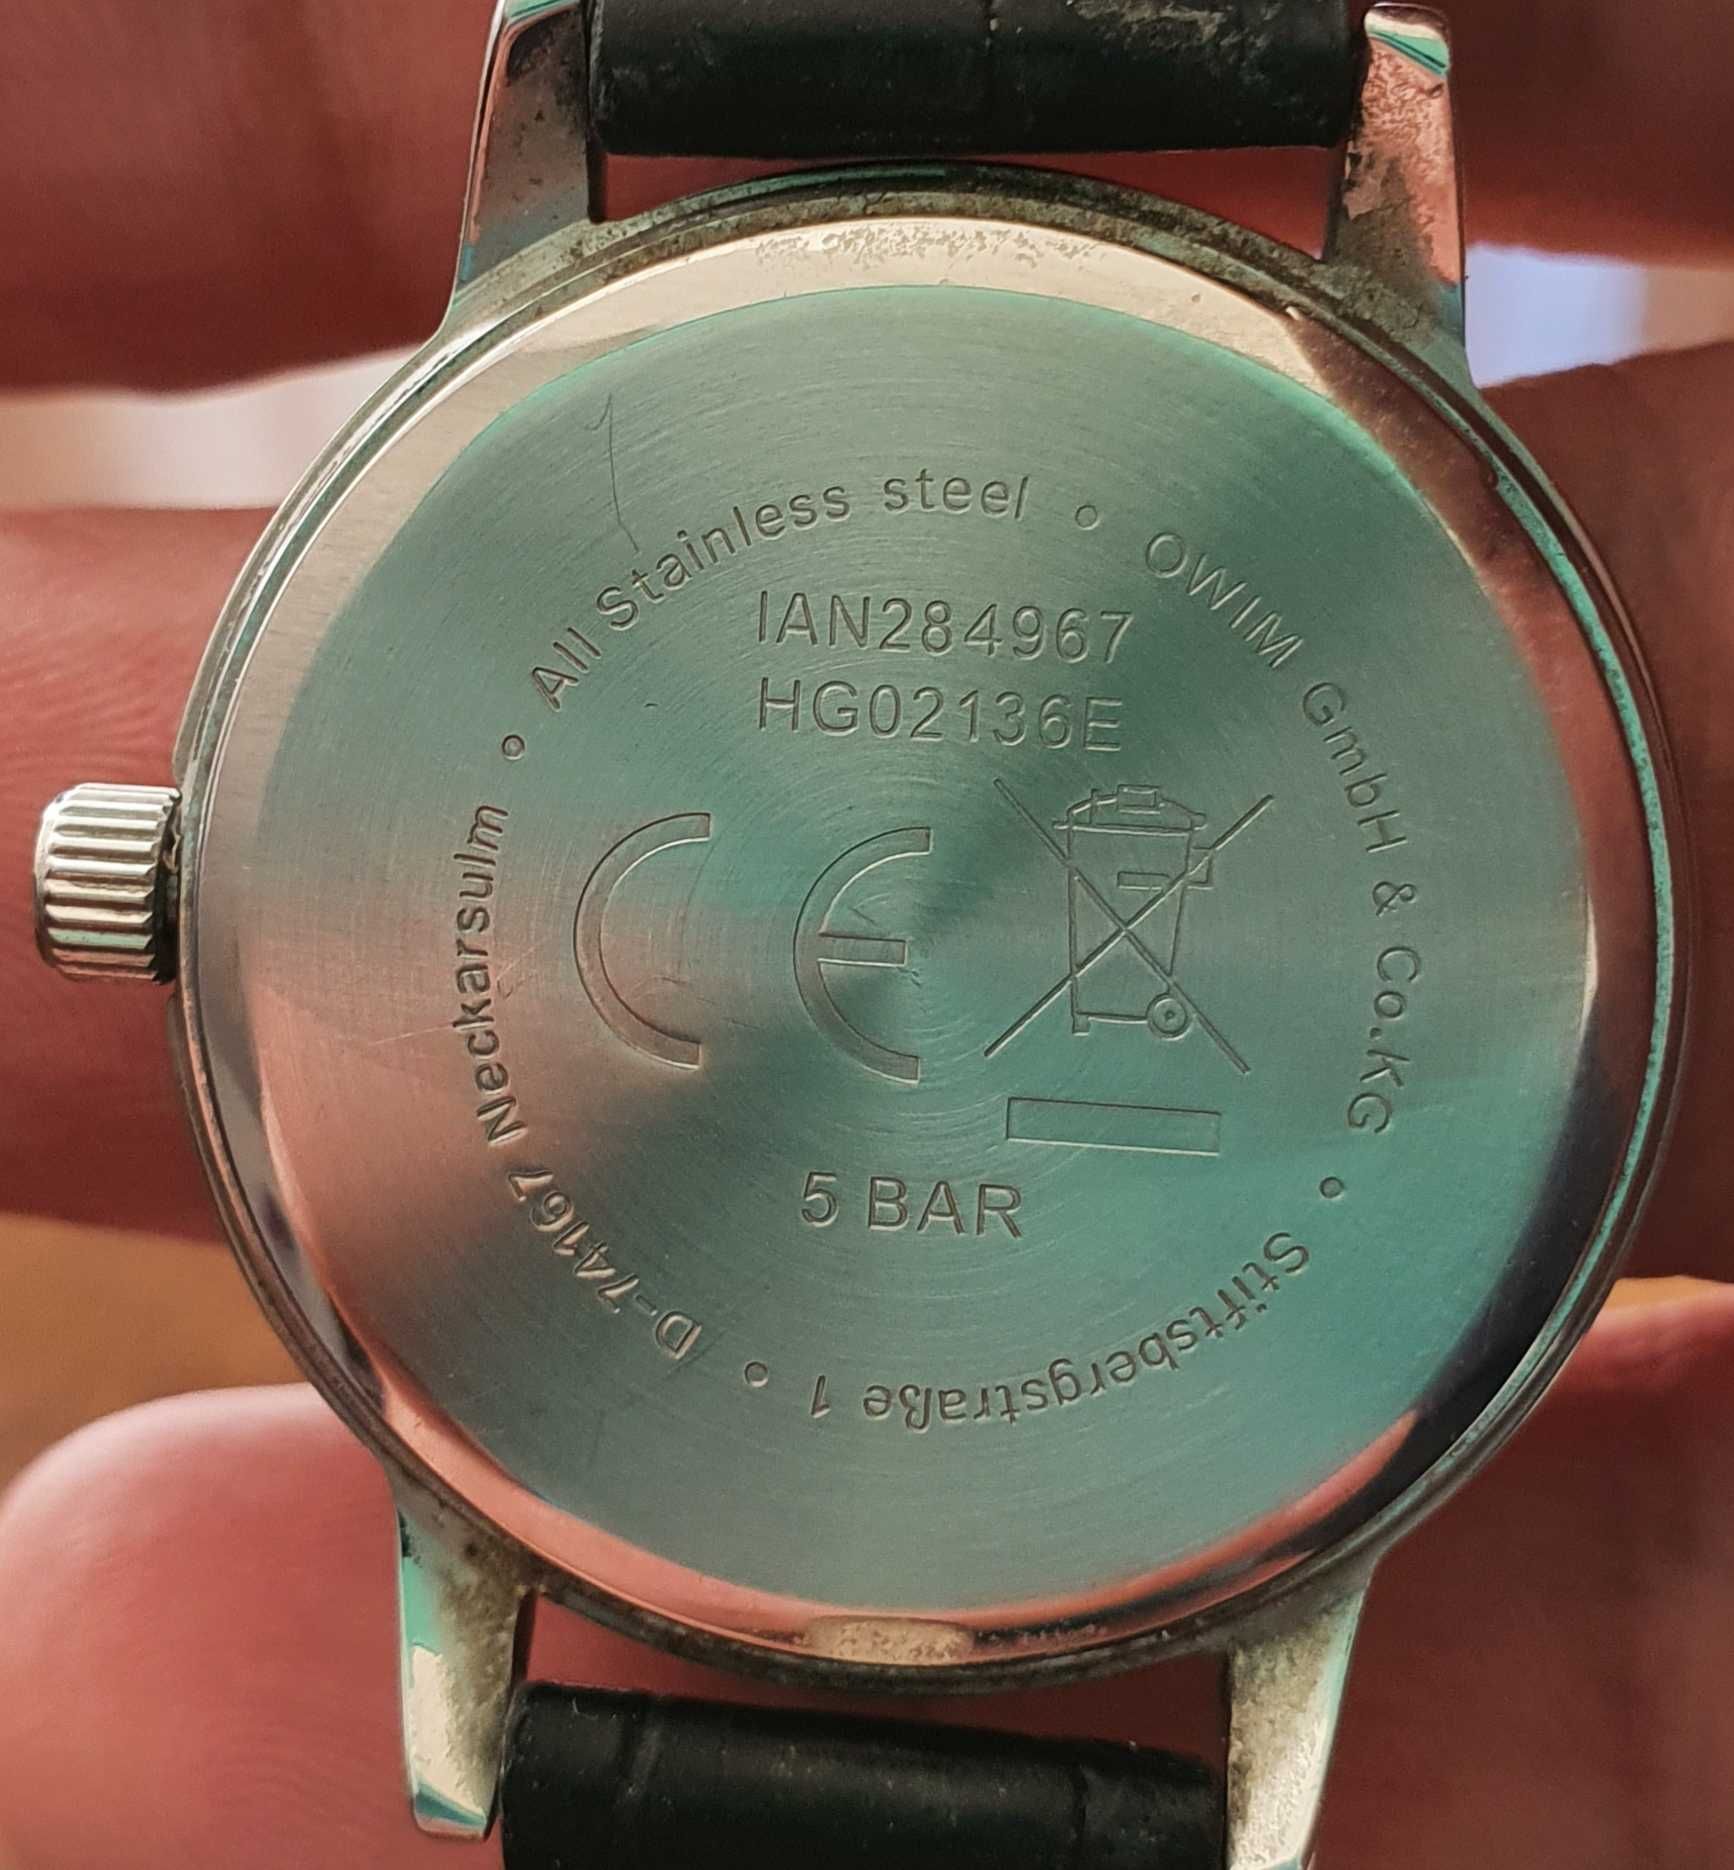 Дамски часовник Owim GmbH ian284967 + Eichmüller since 1950